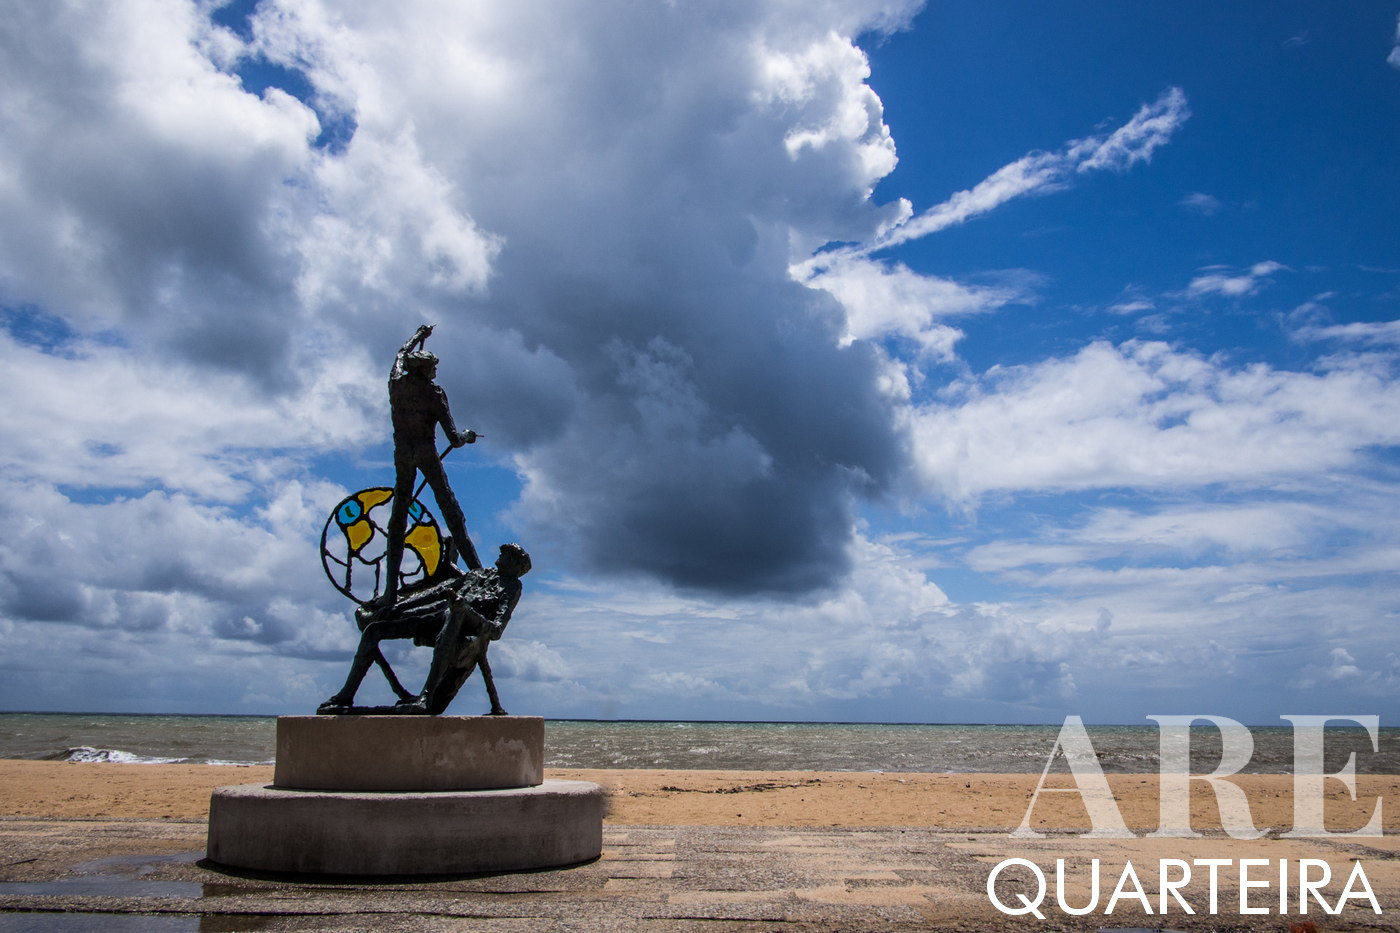 Monumento a los Pescadores, Quarteira - Resiliencia contra la tormenta